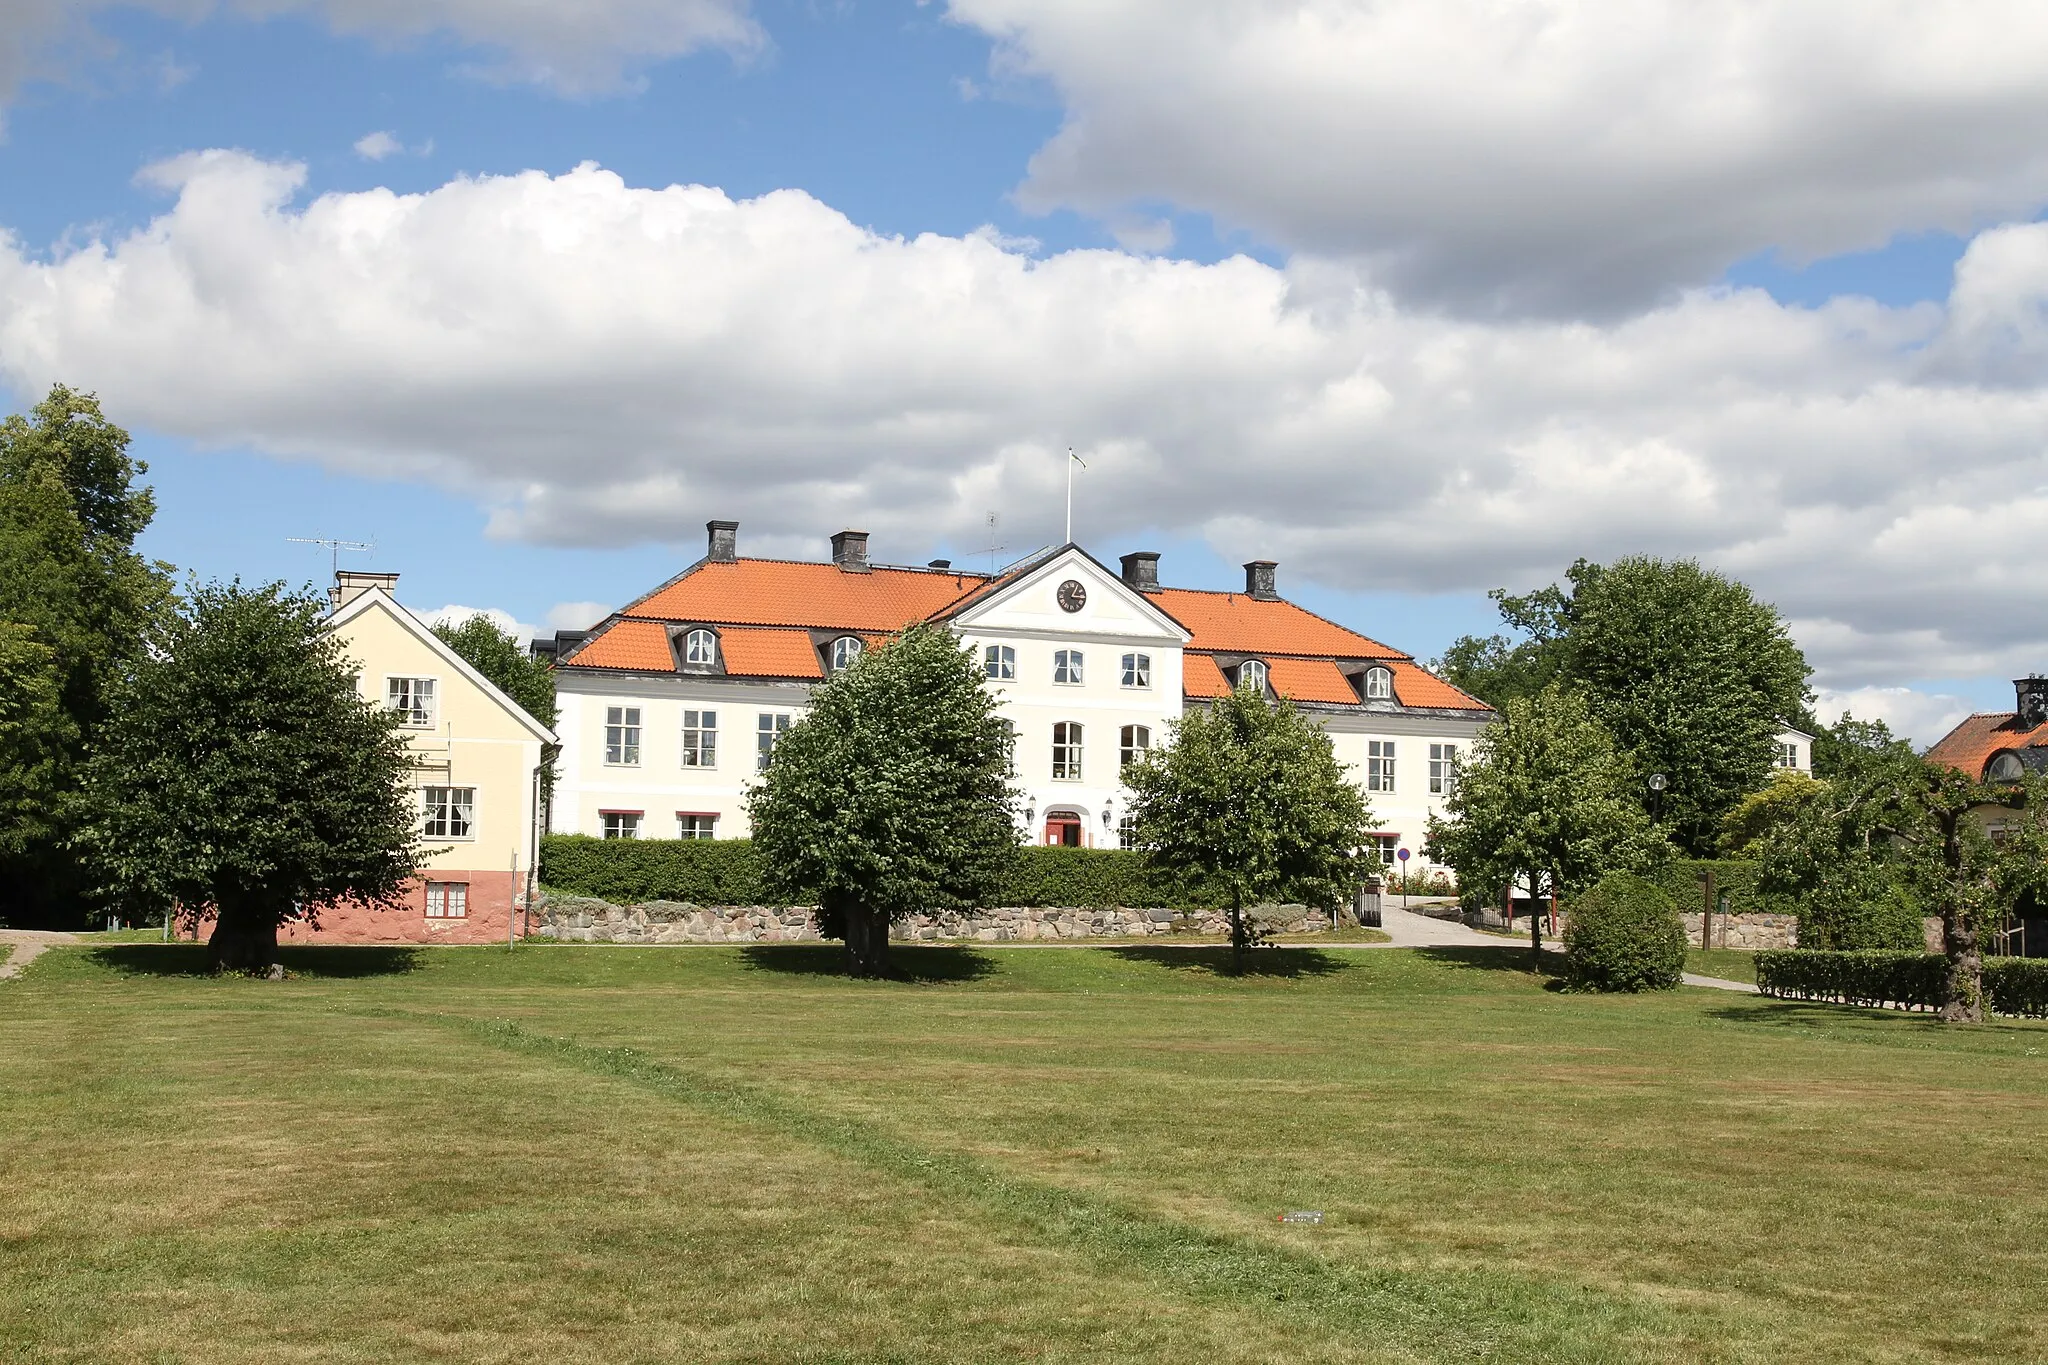 Photo showing: Stjärnholms slott, Oxelösund 31 juli 2016.
Framsidan.